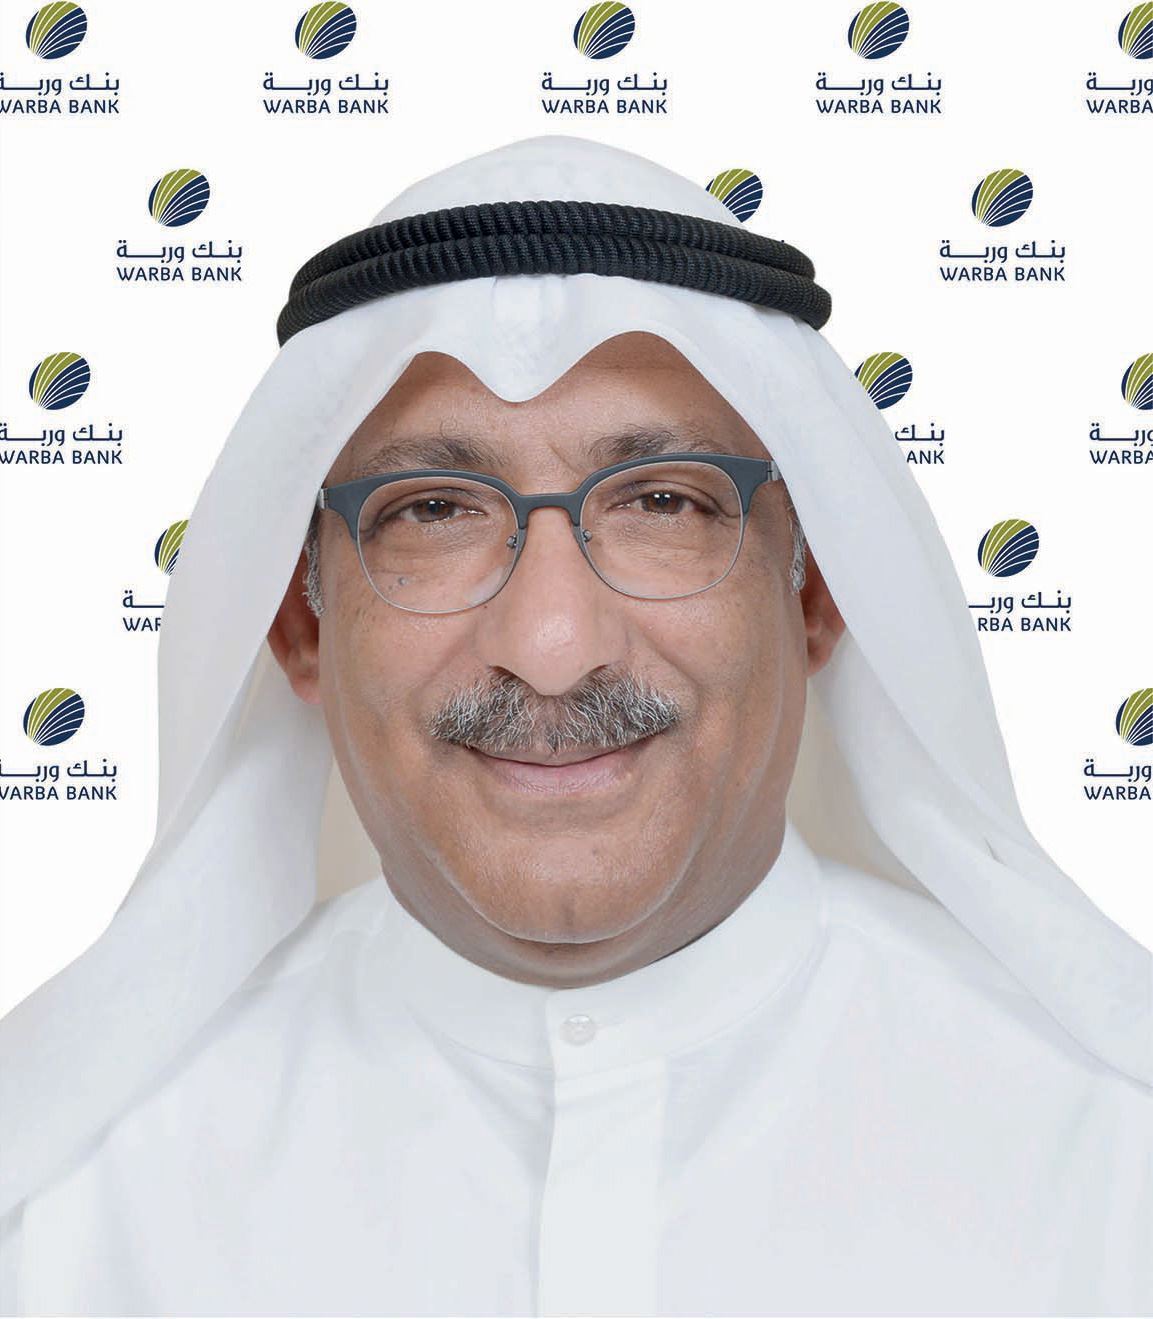 السيد هيثم عبدالعزيز التركيت رئيس مجموعة تكنولوجيا المعلومات في بنك وربة